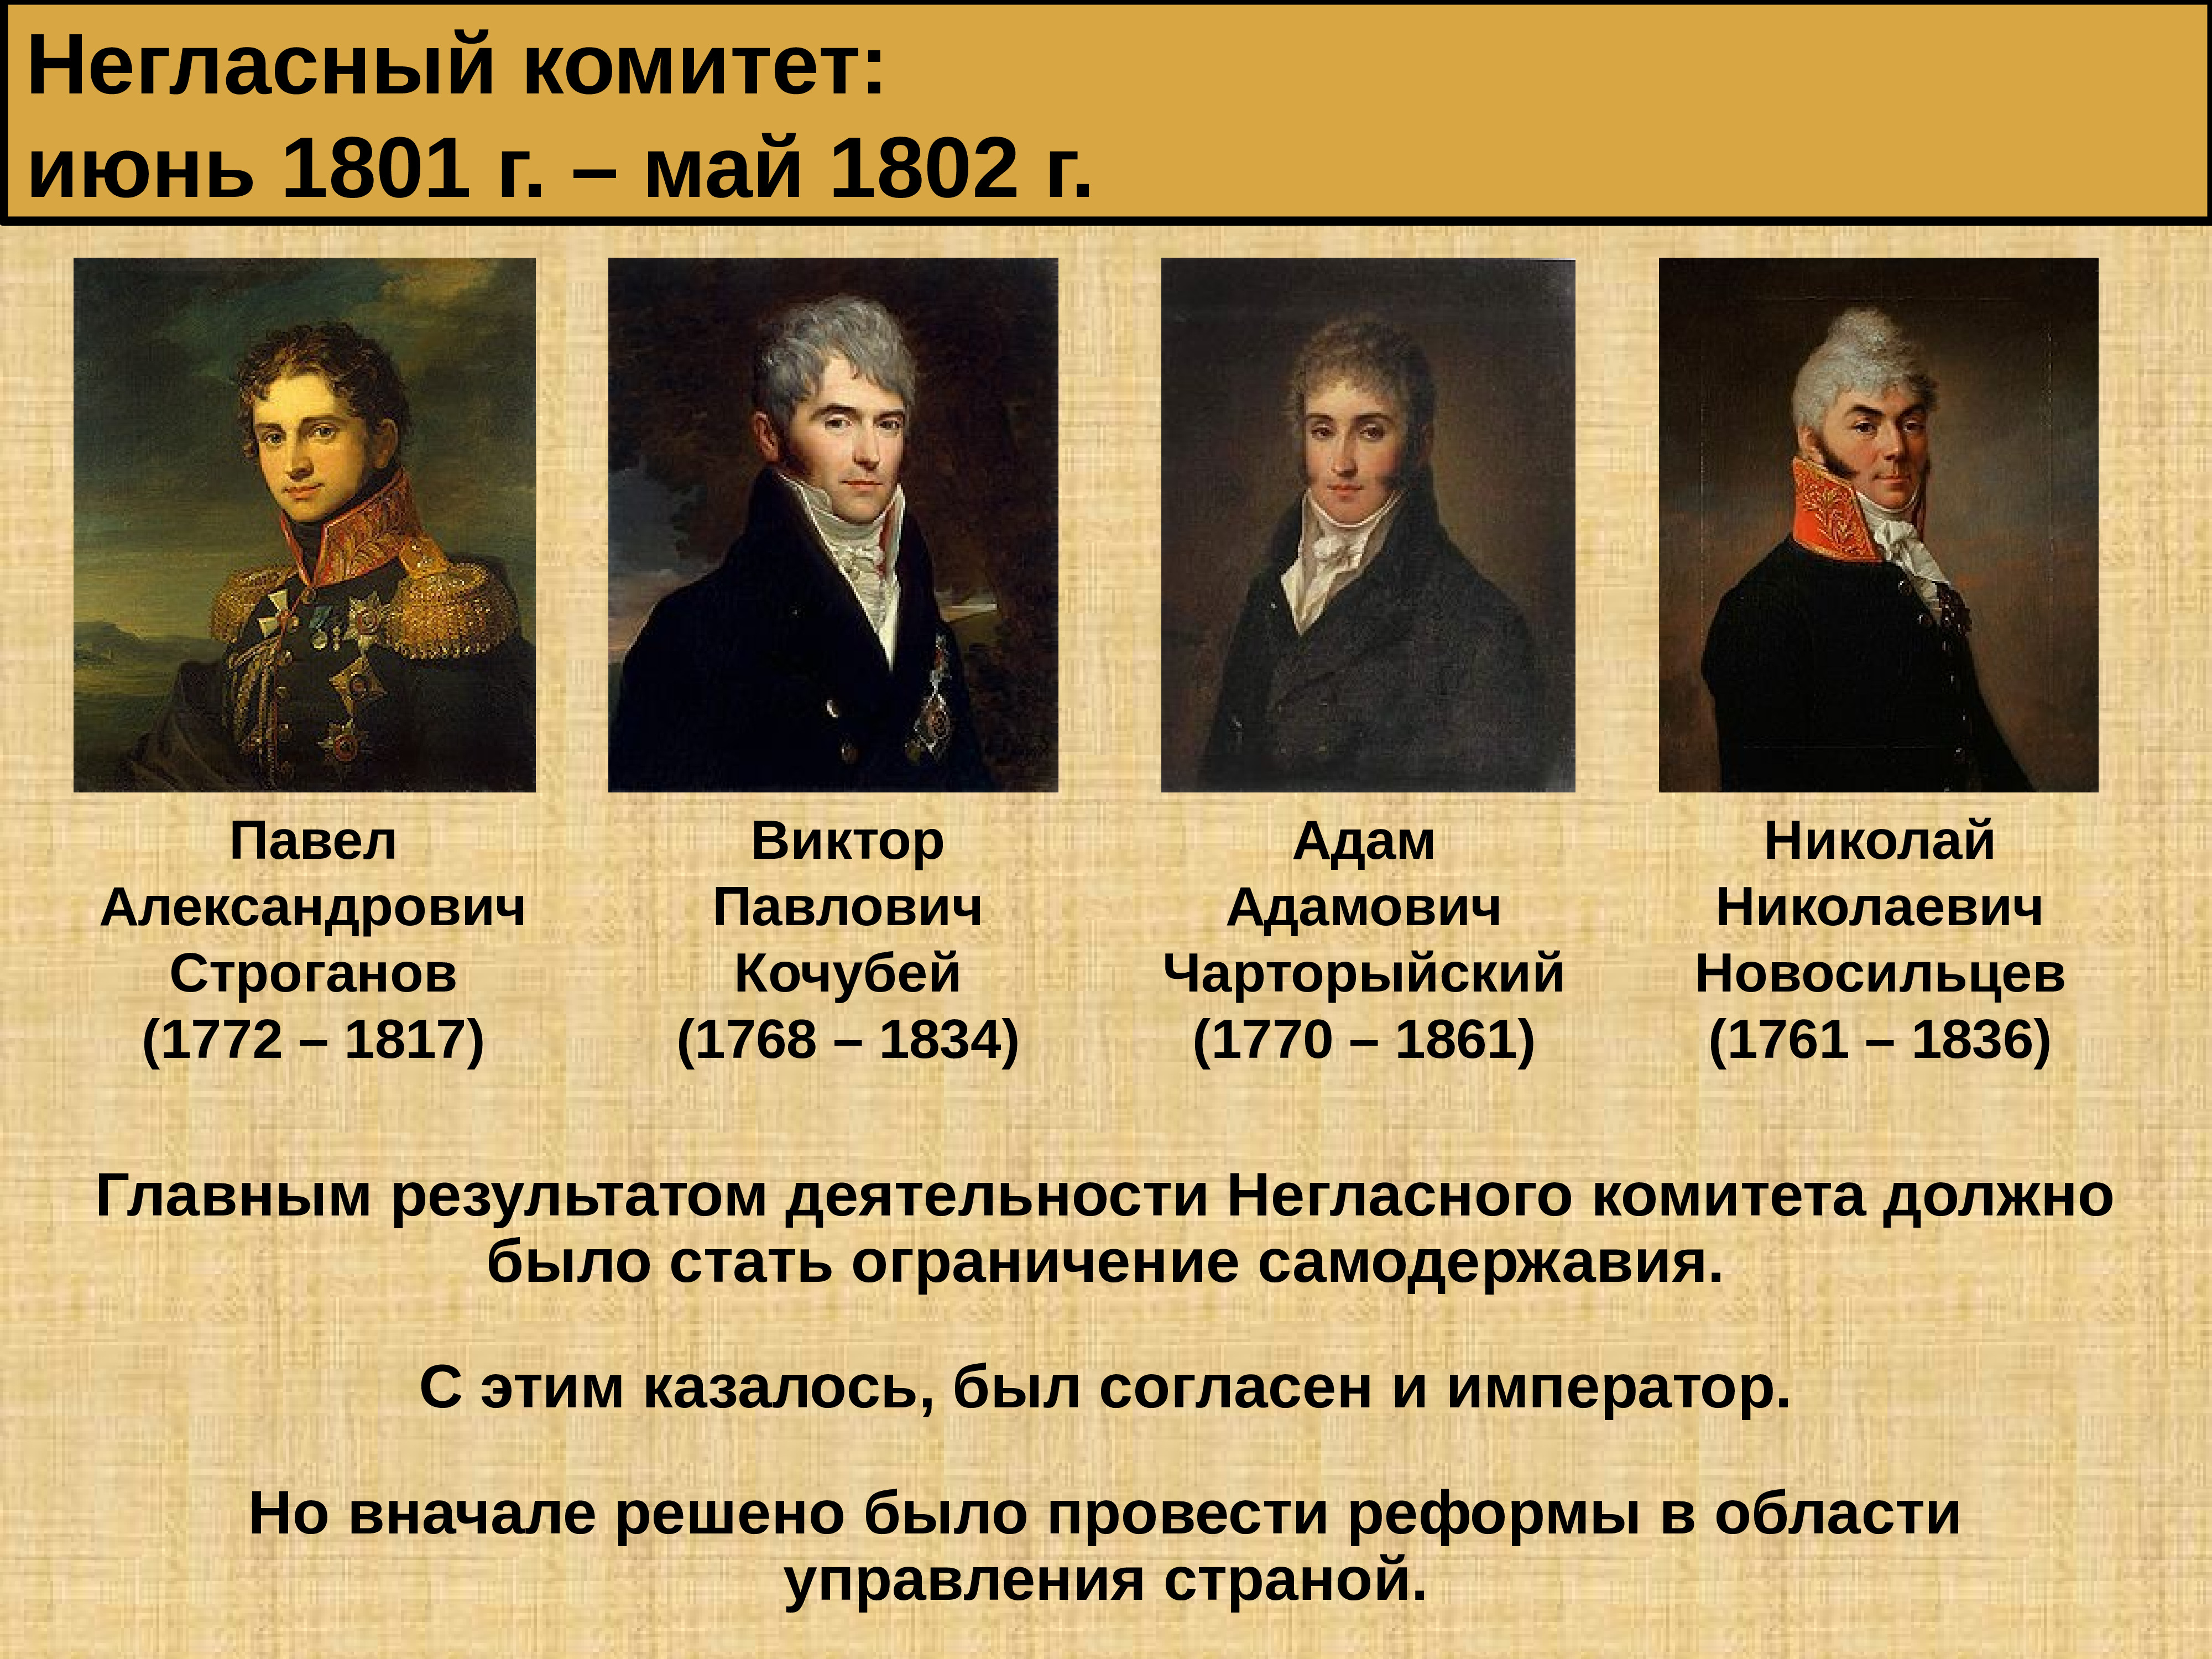 Радикальные сторонники реформ. Негласный комитет 1801 - 1805.